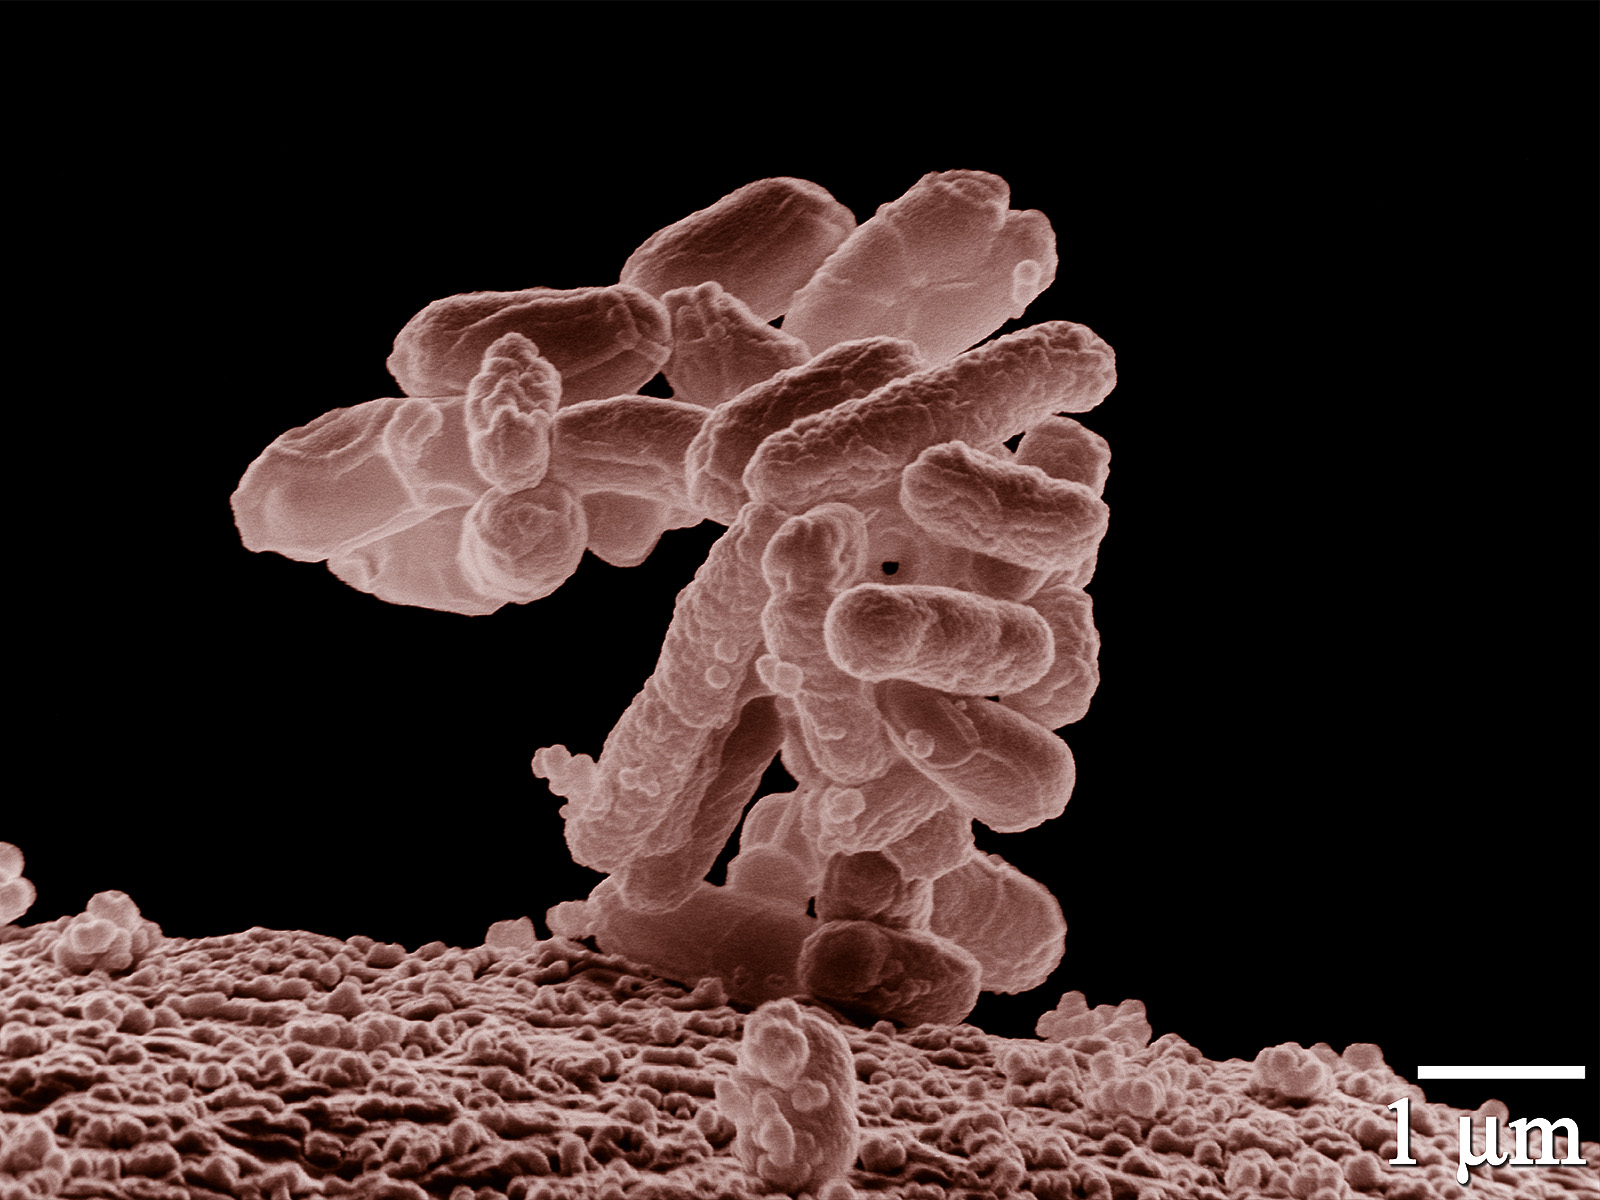 Escherichia coli, une bactérie intestinale présente chez les mammifères, au microscope électronique. Empilées les unes sur les autres, les bactéries communiquent et s'échangent de l'information génétique. Elles peuvent aussi capturer de l'ADN libre dans l'environnement par le mécanisme de transformation génétique. © Microbe World, Flickr, cc by nc sa 2.0 